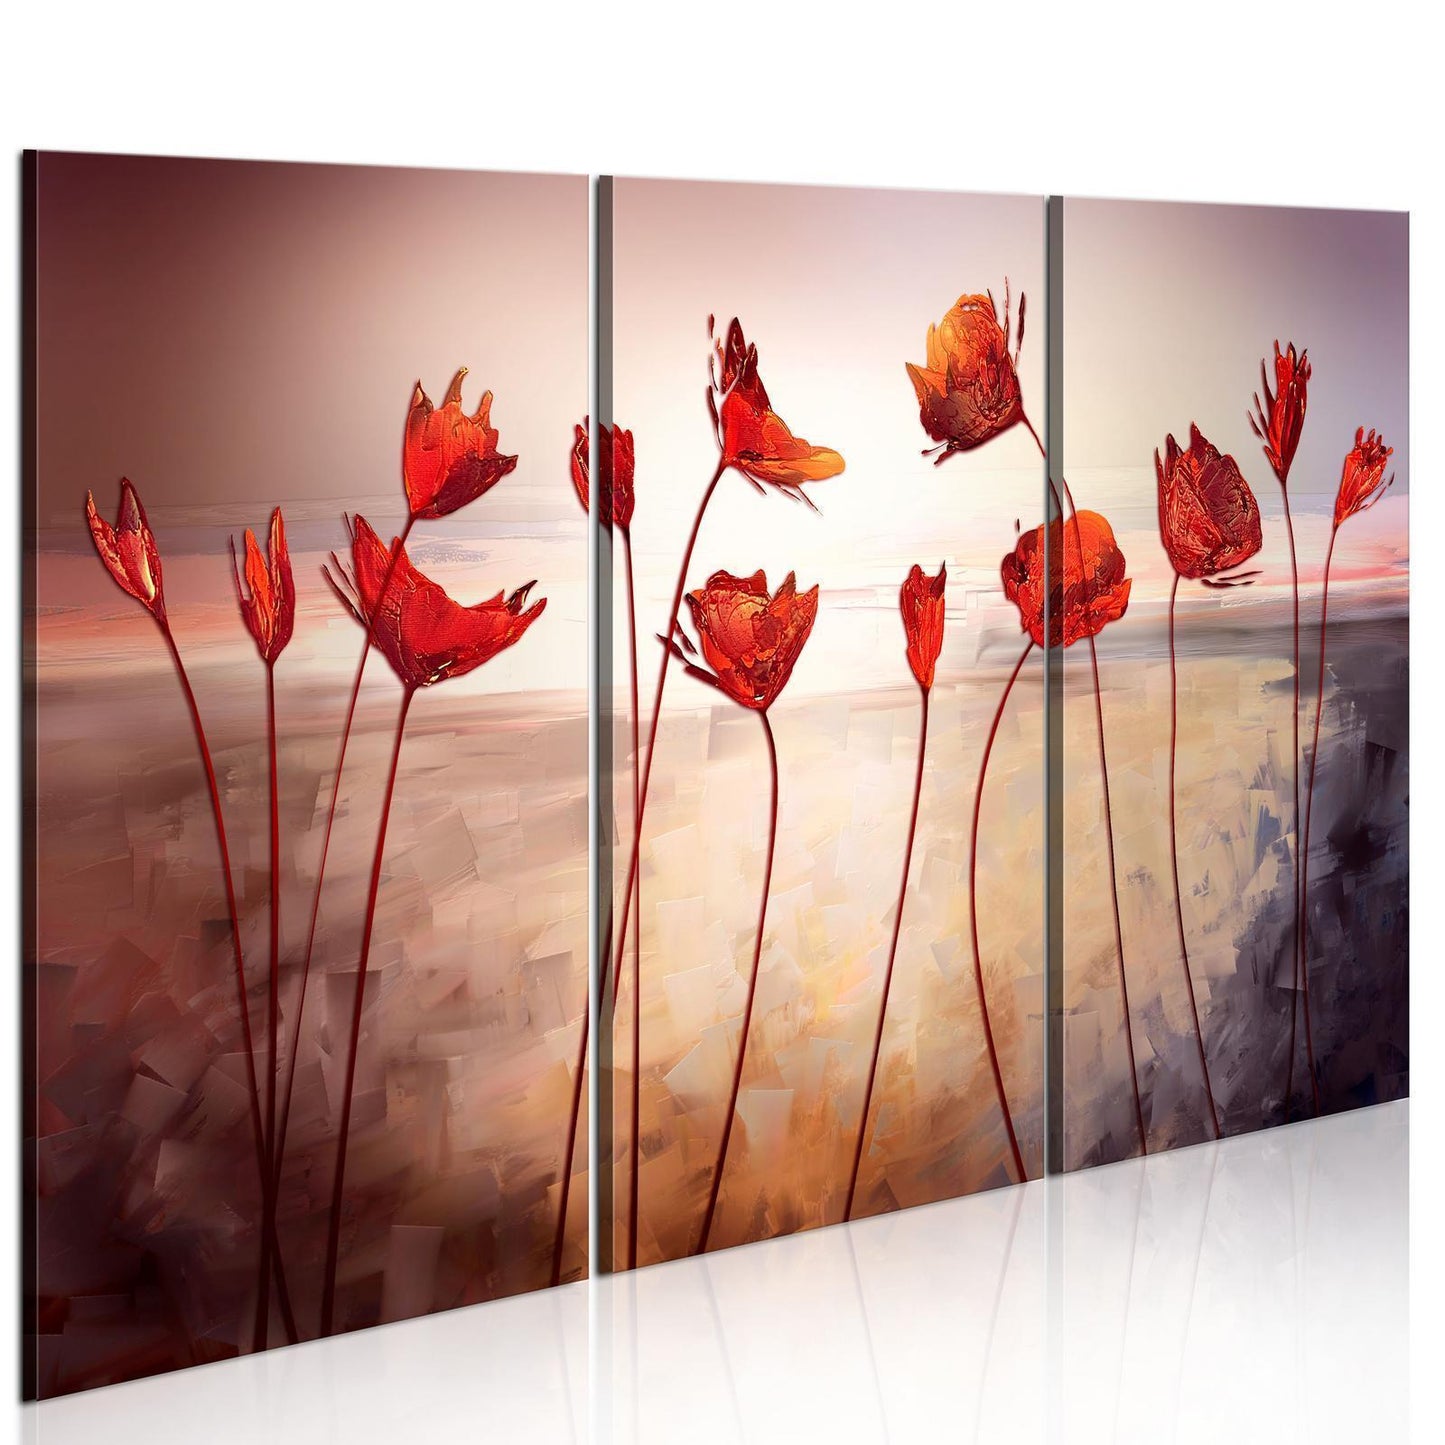 Schilderij - Bright red poppies